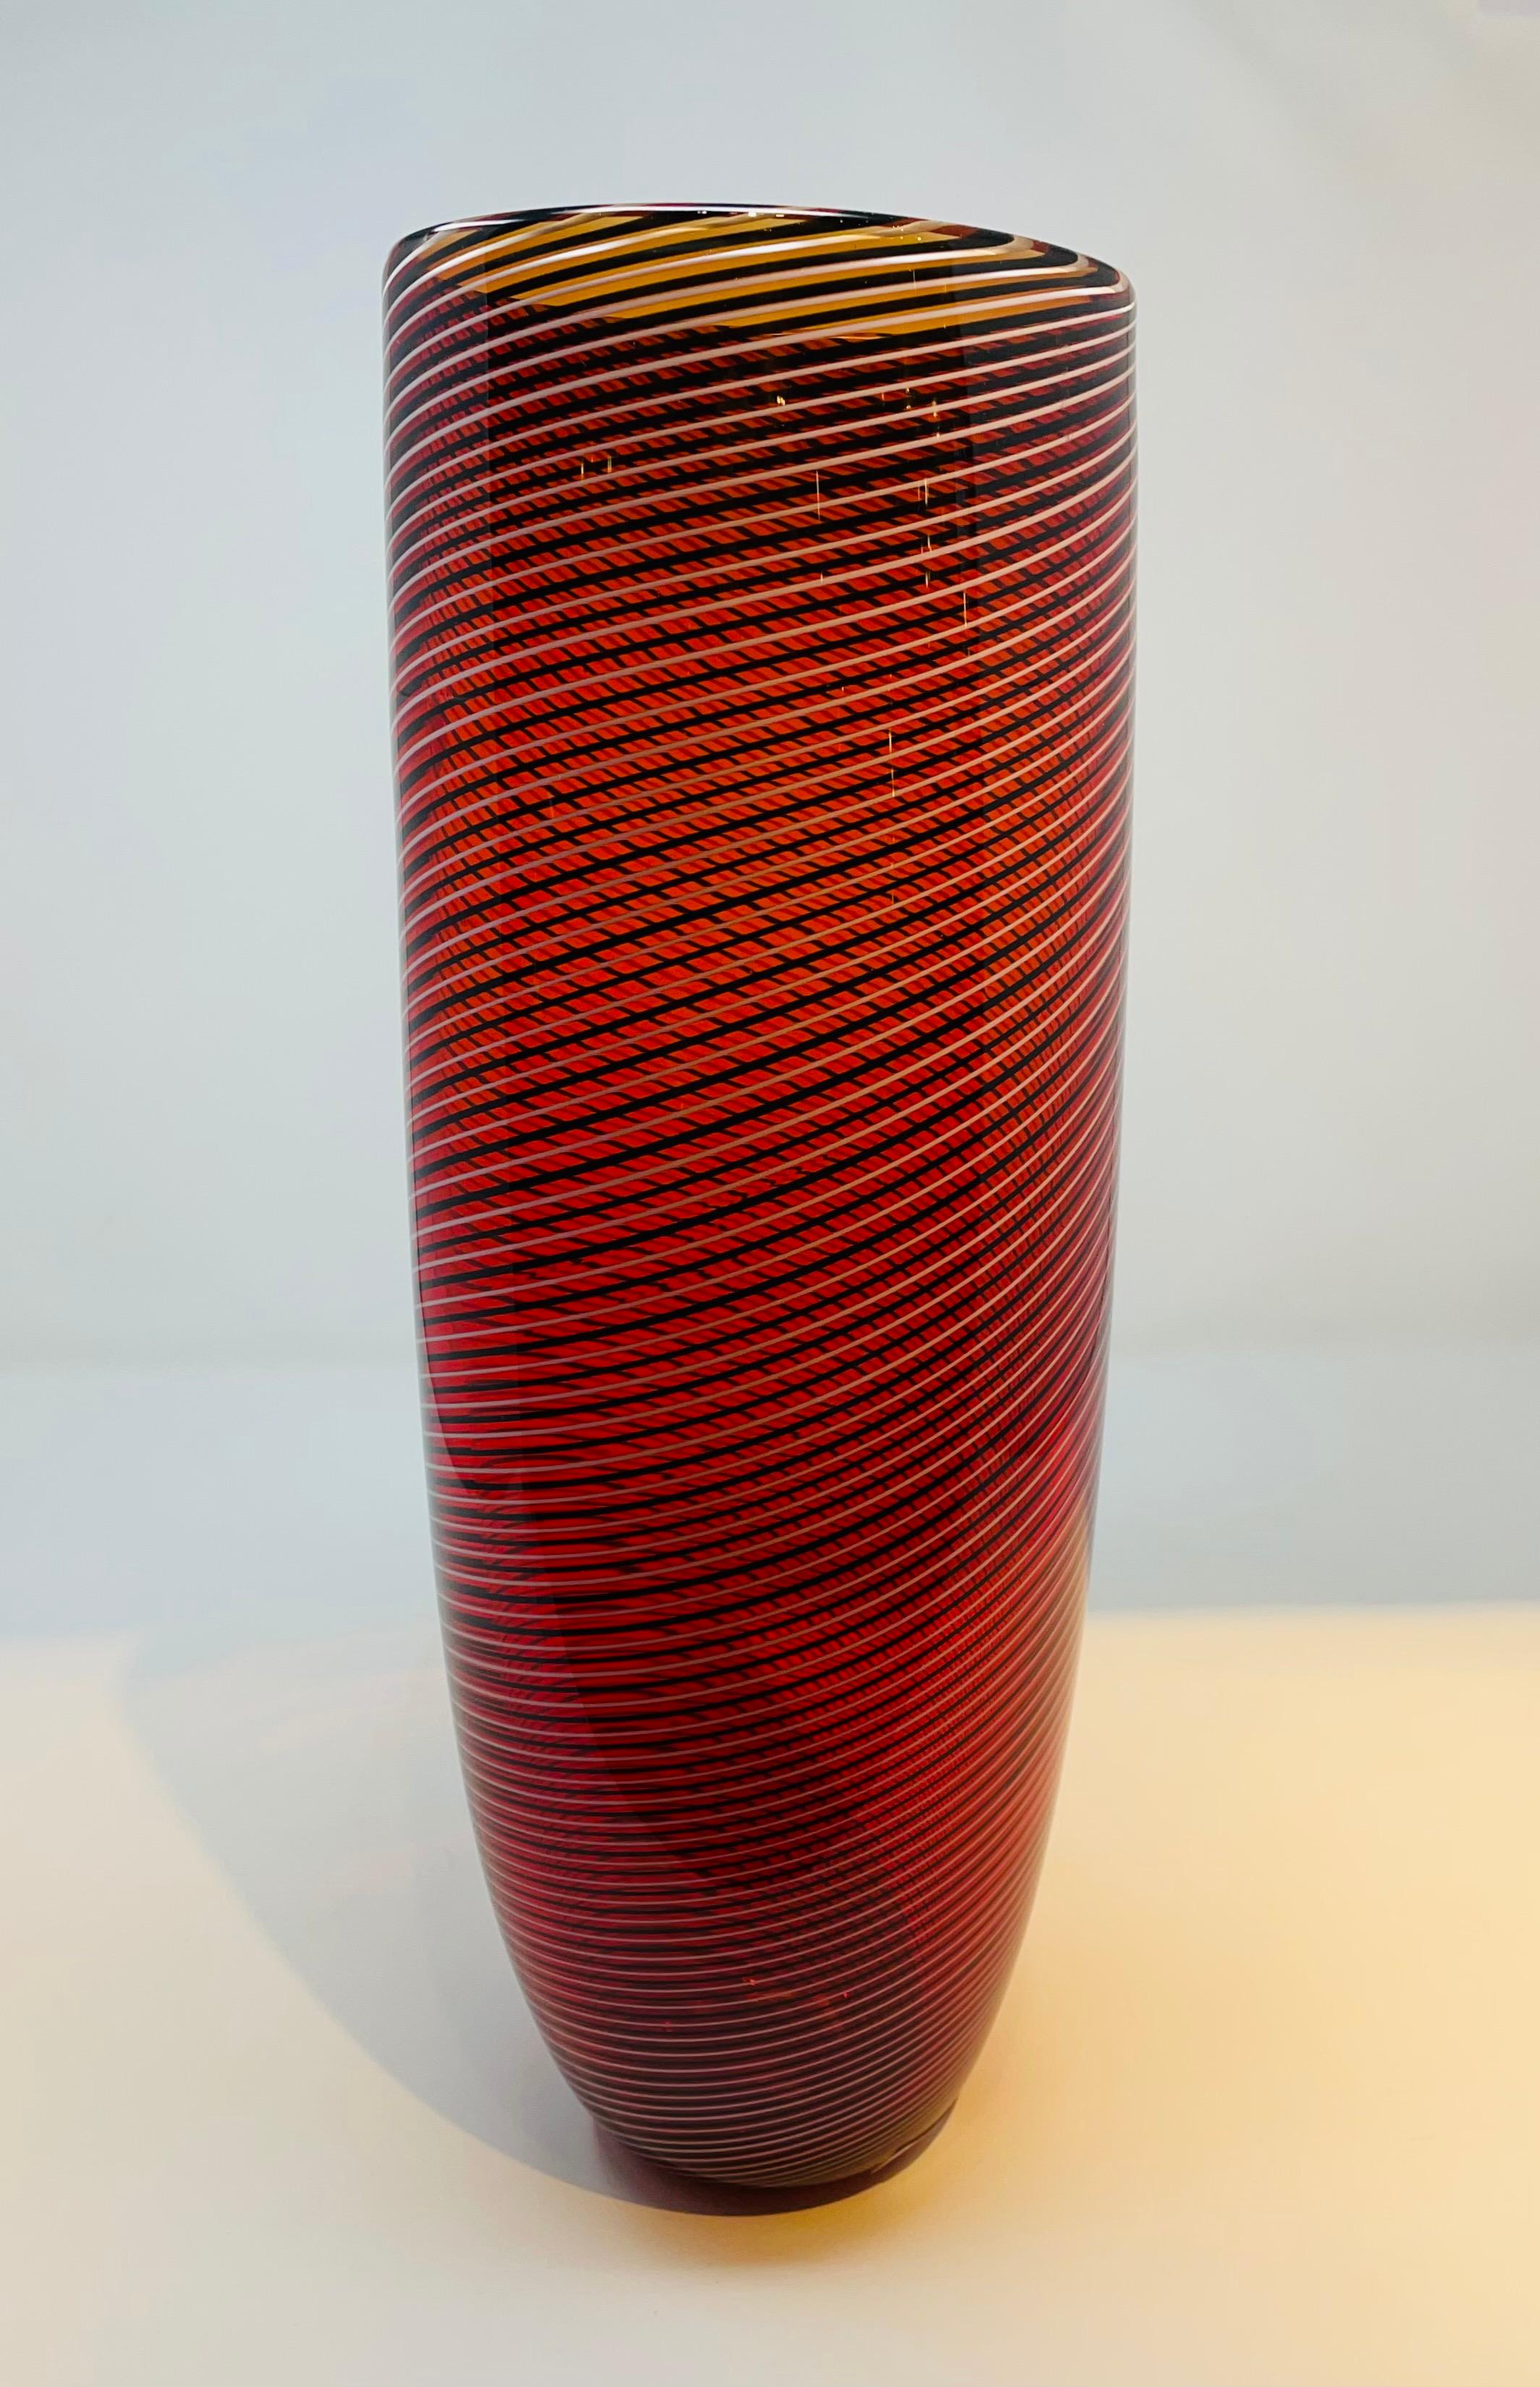 Murano glass vase by Seguso Viro, 1990s.